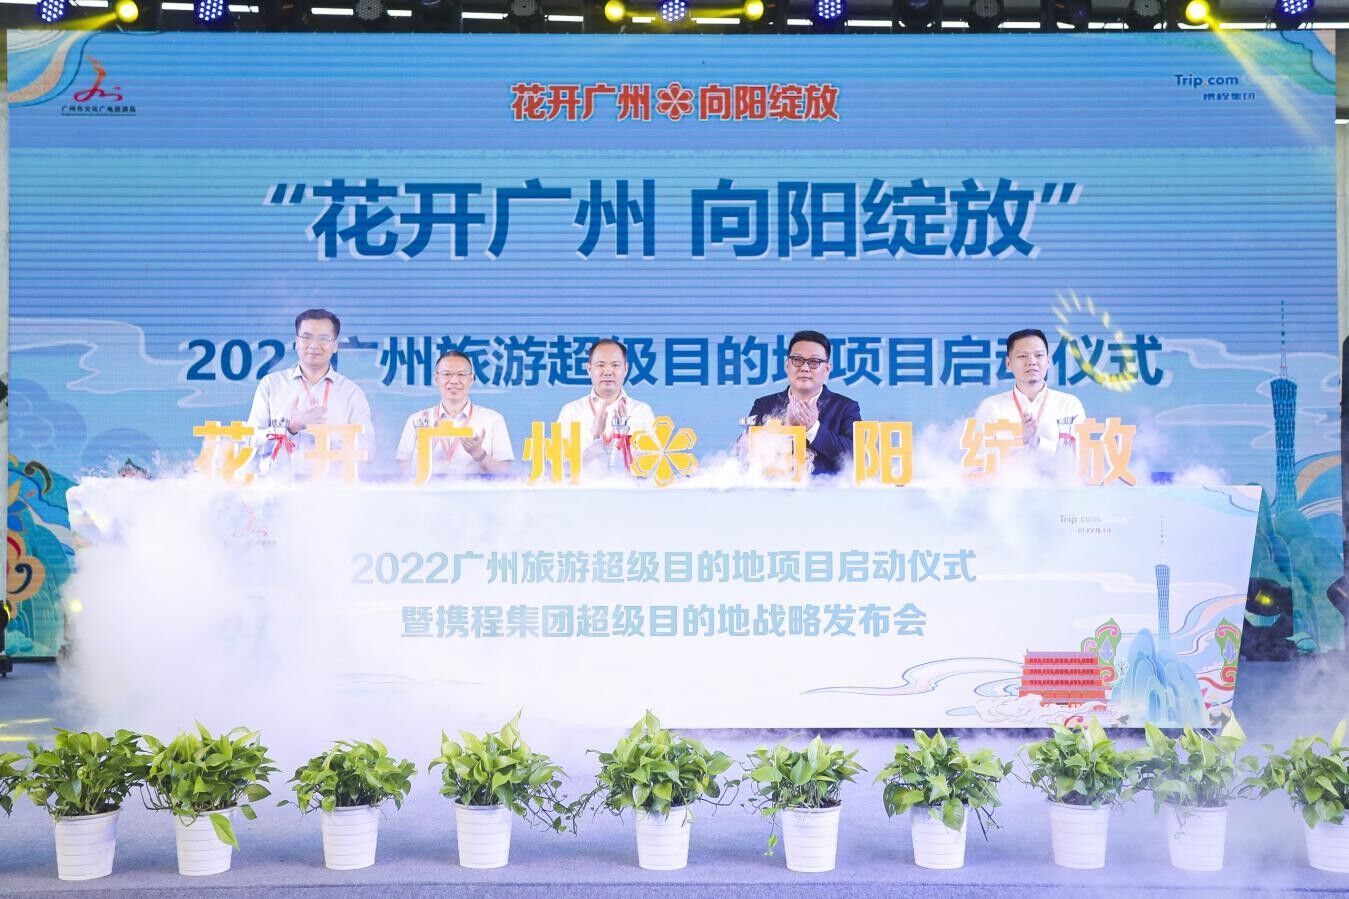 广州与携程联合启动“超级目的地”项目 构筑广州文旅新引擎